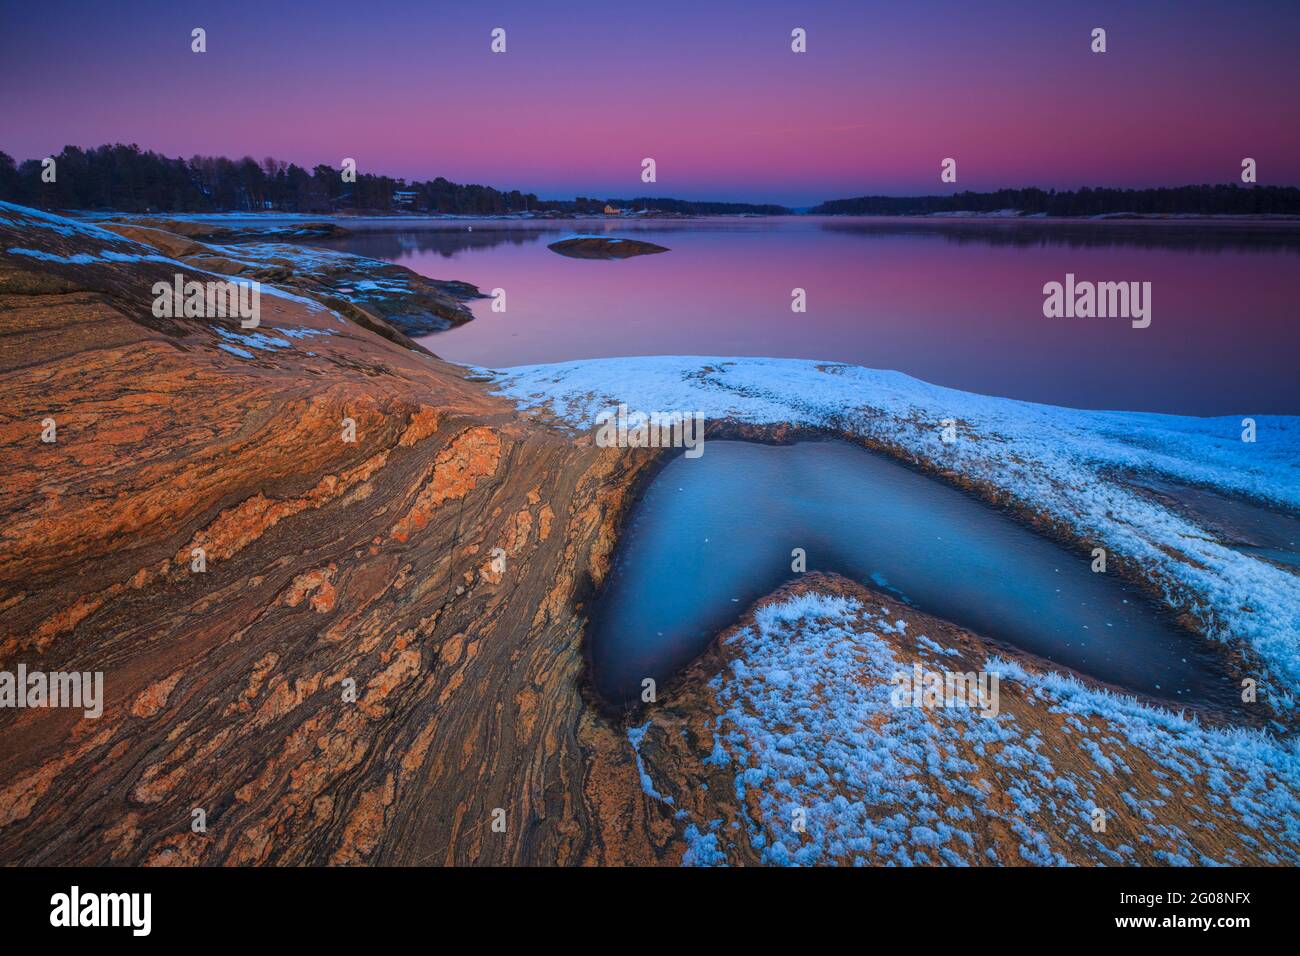 Belle formazioni rocciose e colorati cieli invernali serali al forno vicino al Oslofjord, Råde kommune, Østfold, Norvegia, Scandinavia. Foto Stock